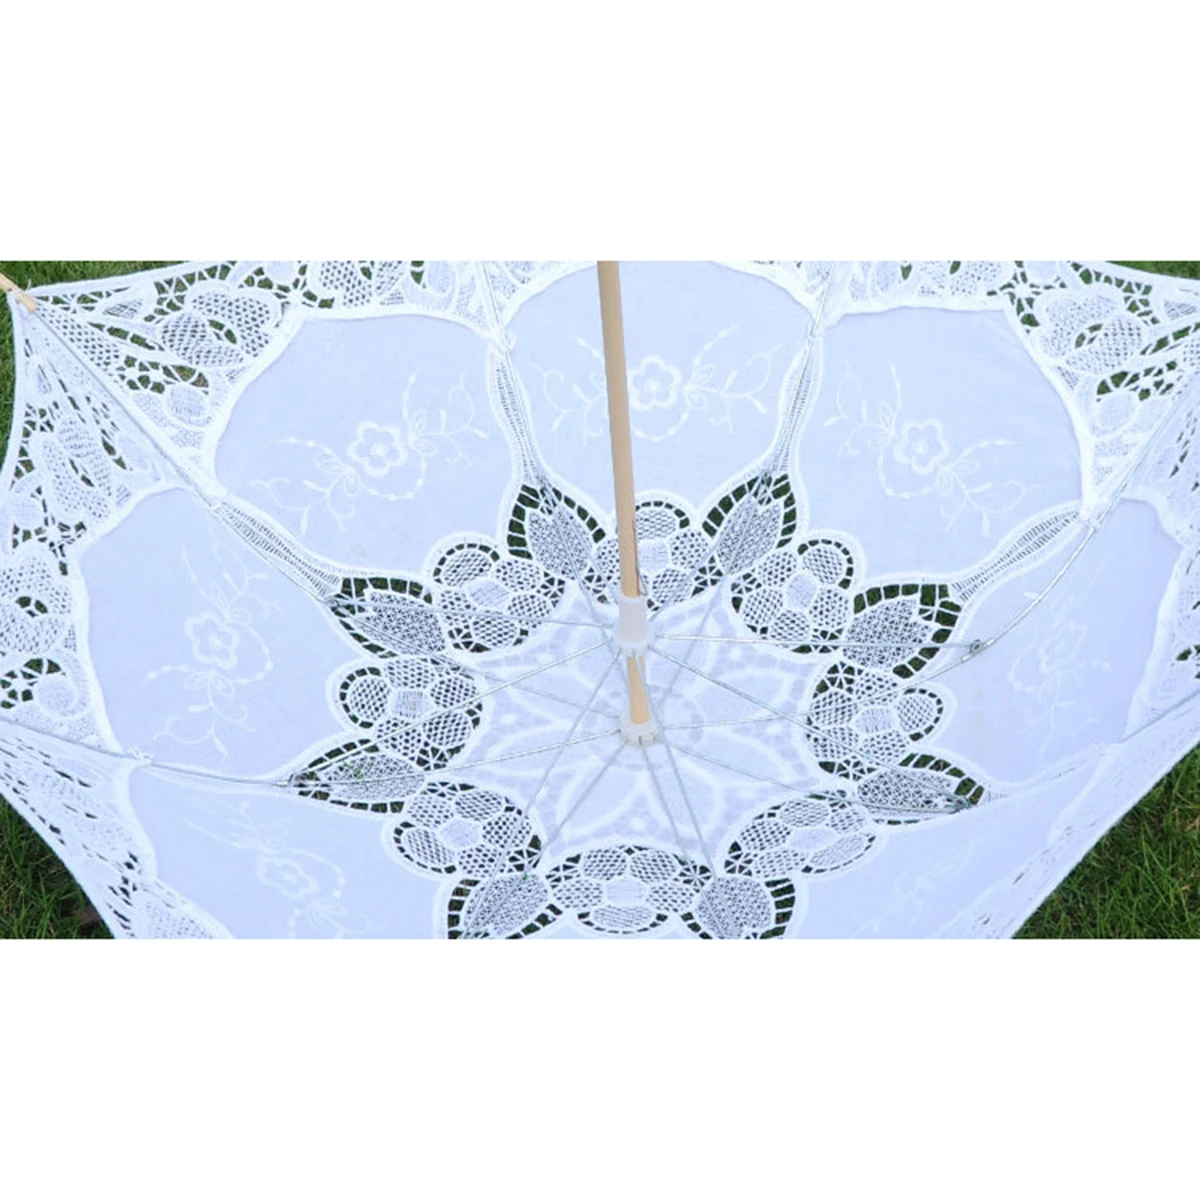 Свадебные зонтик кружево хлопок вышивка ручной работы зонтик для свадьбы романтический реквизит фотосессии L Размеры 60 см